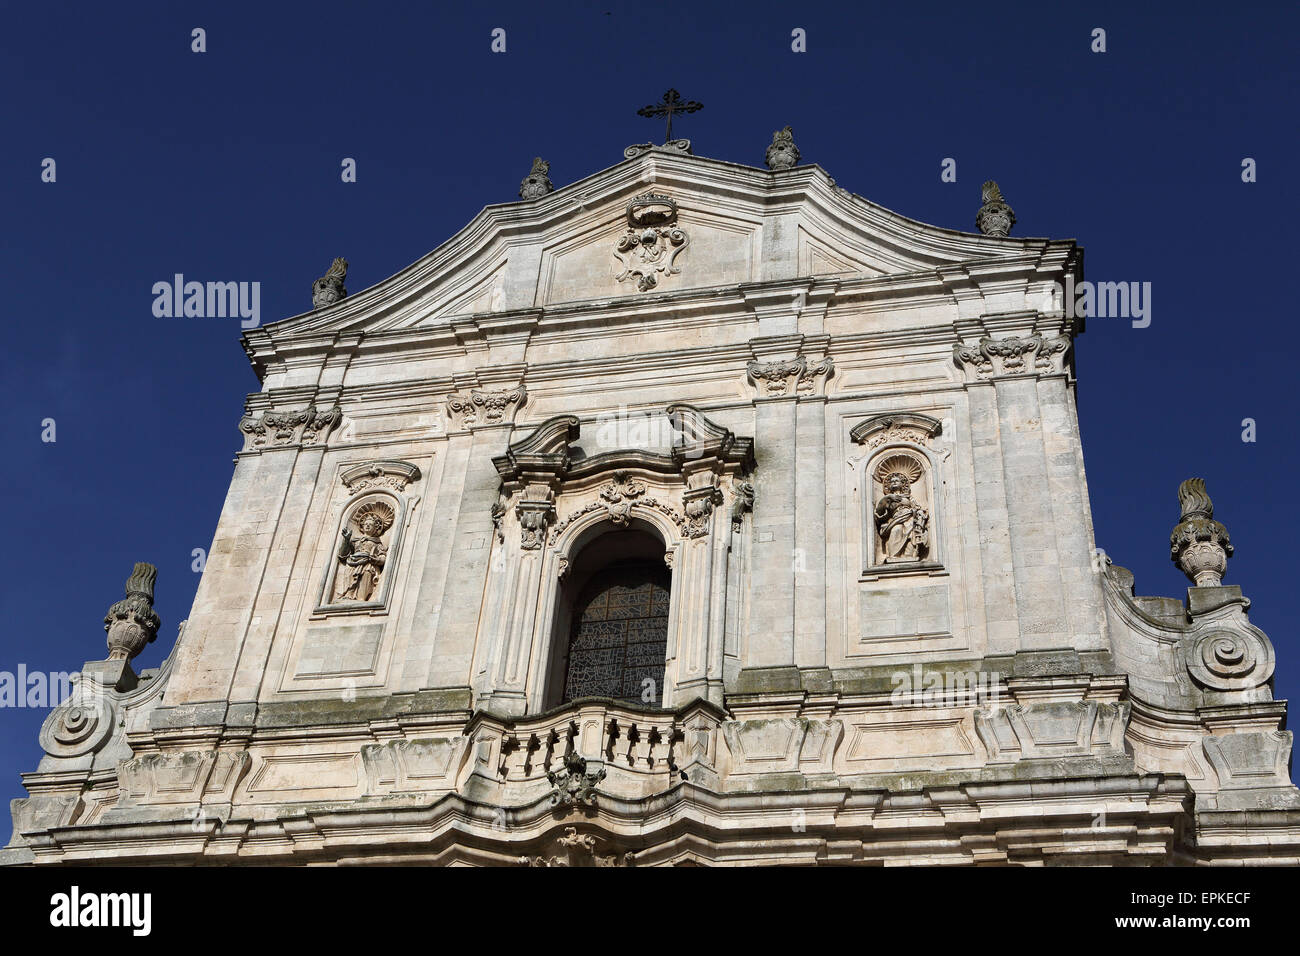 Basilica of St Martin (Basilica San Martino) in Martina Franca, Apulia, Italy. The facade is Baroque in style. Stock Photo